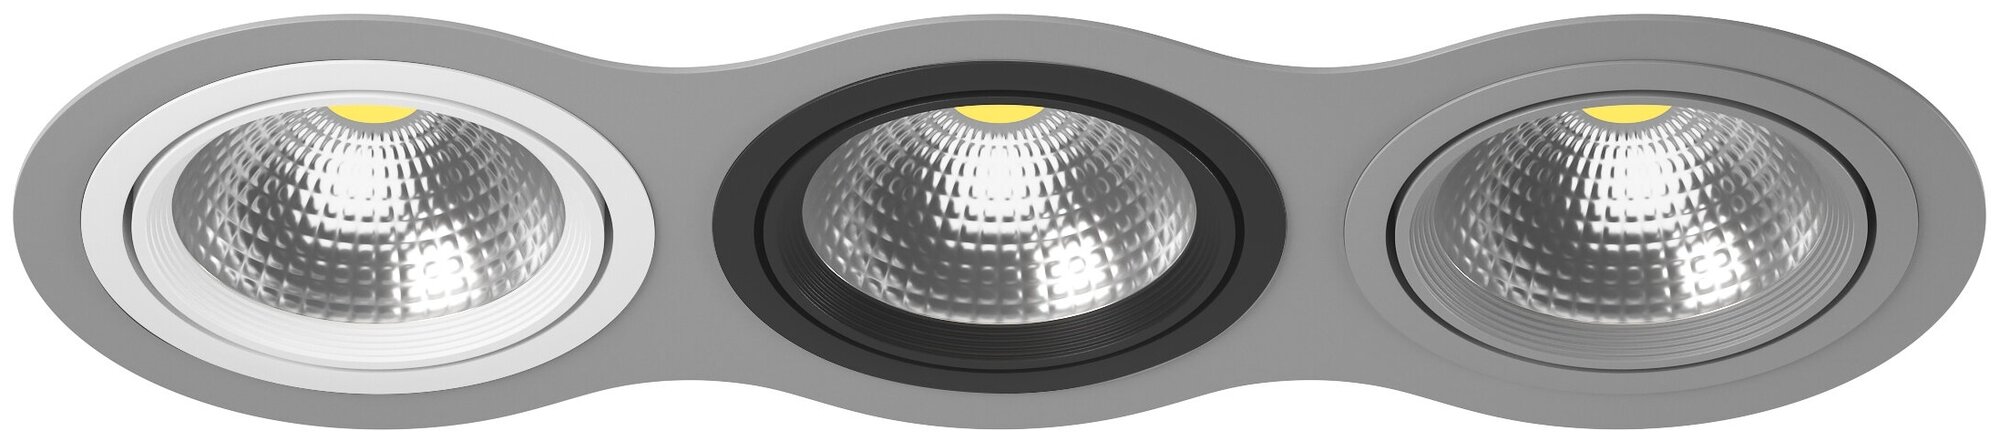 Точечный светильник встроенный серый Lightstar Intero 111 i939060709